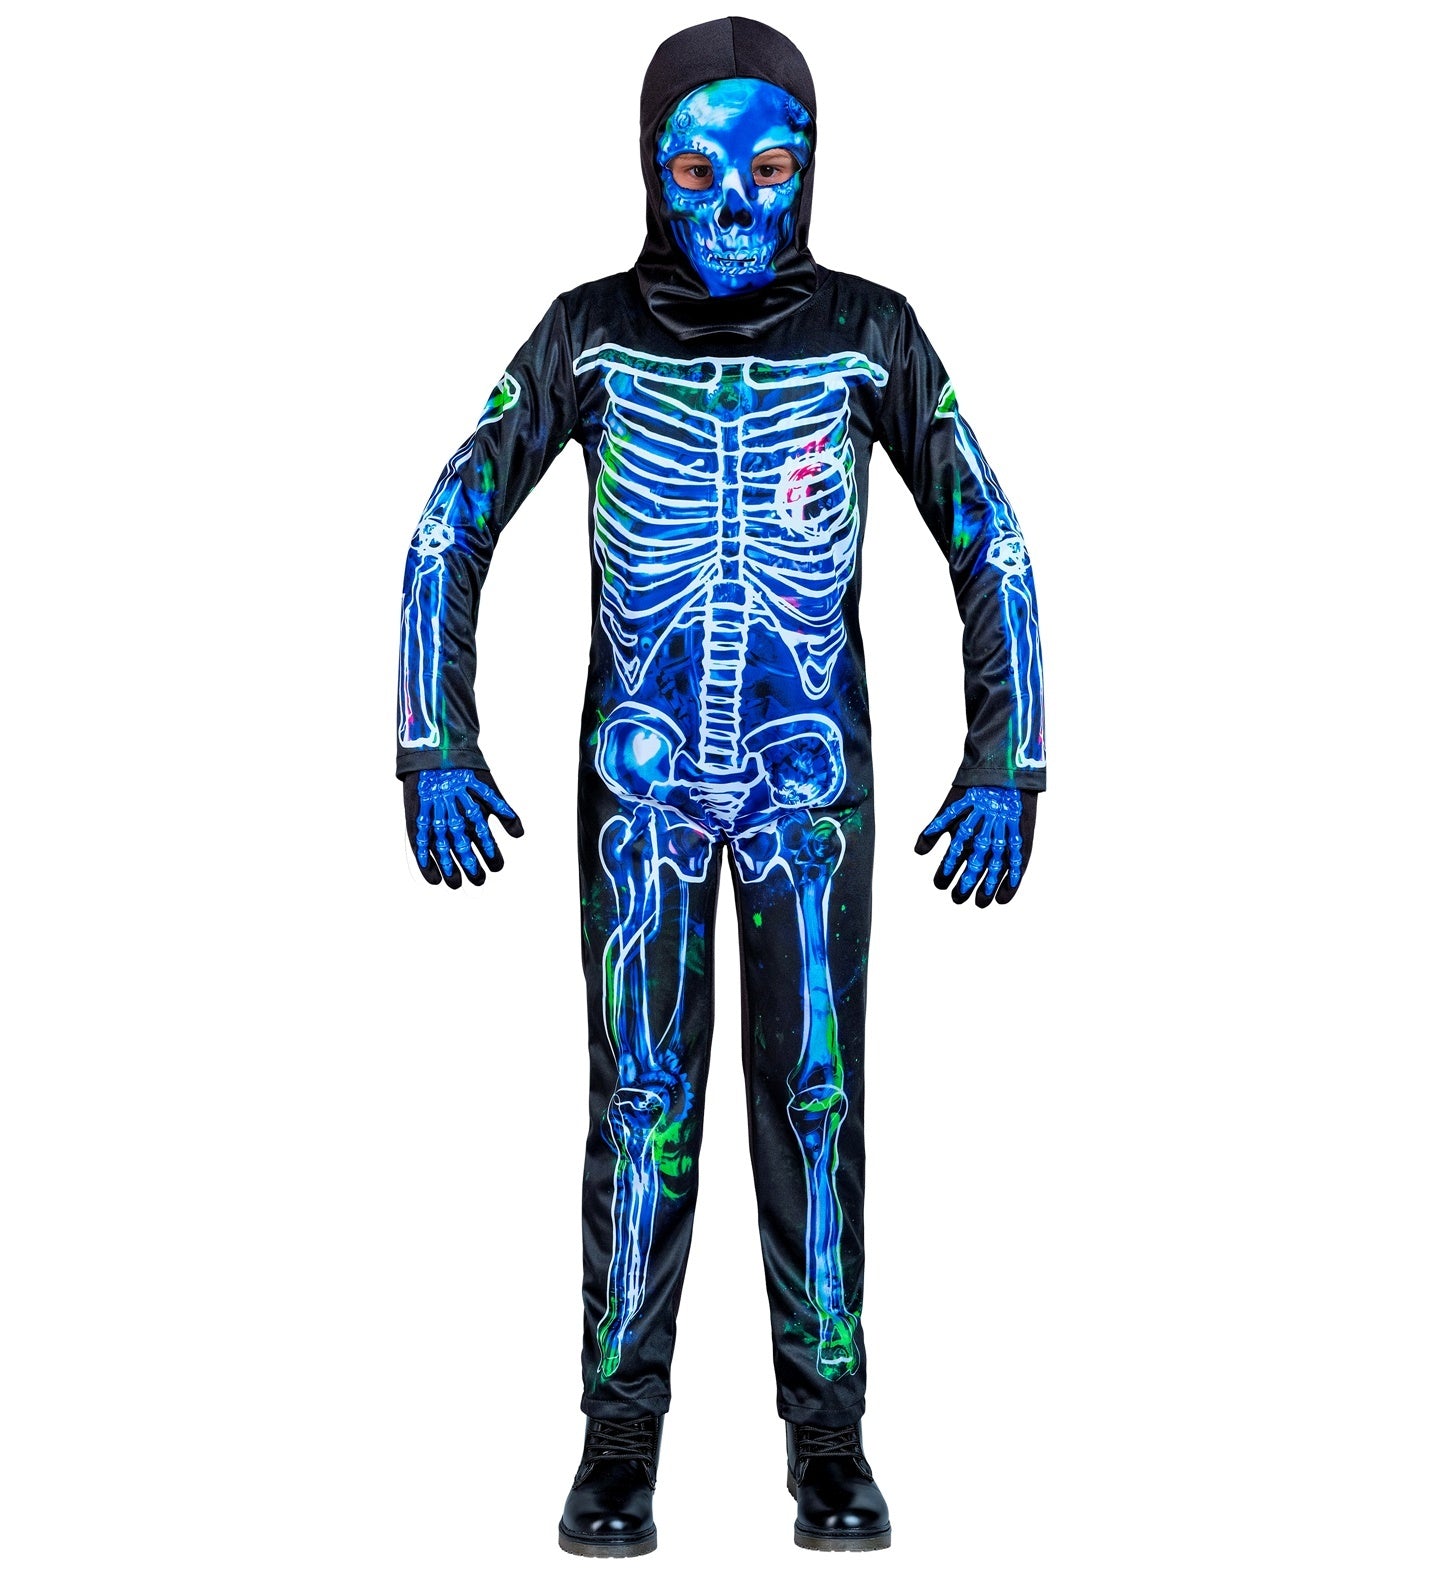 Mooi giftig skelet blauw/zwart voor de halloweenparty